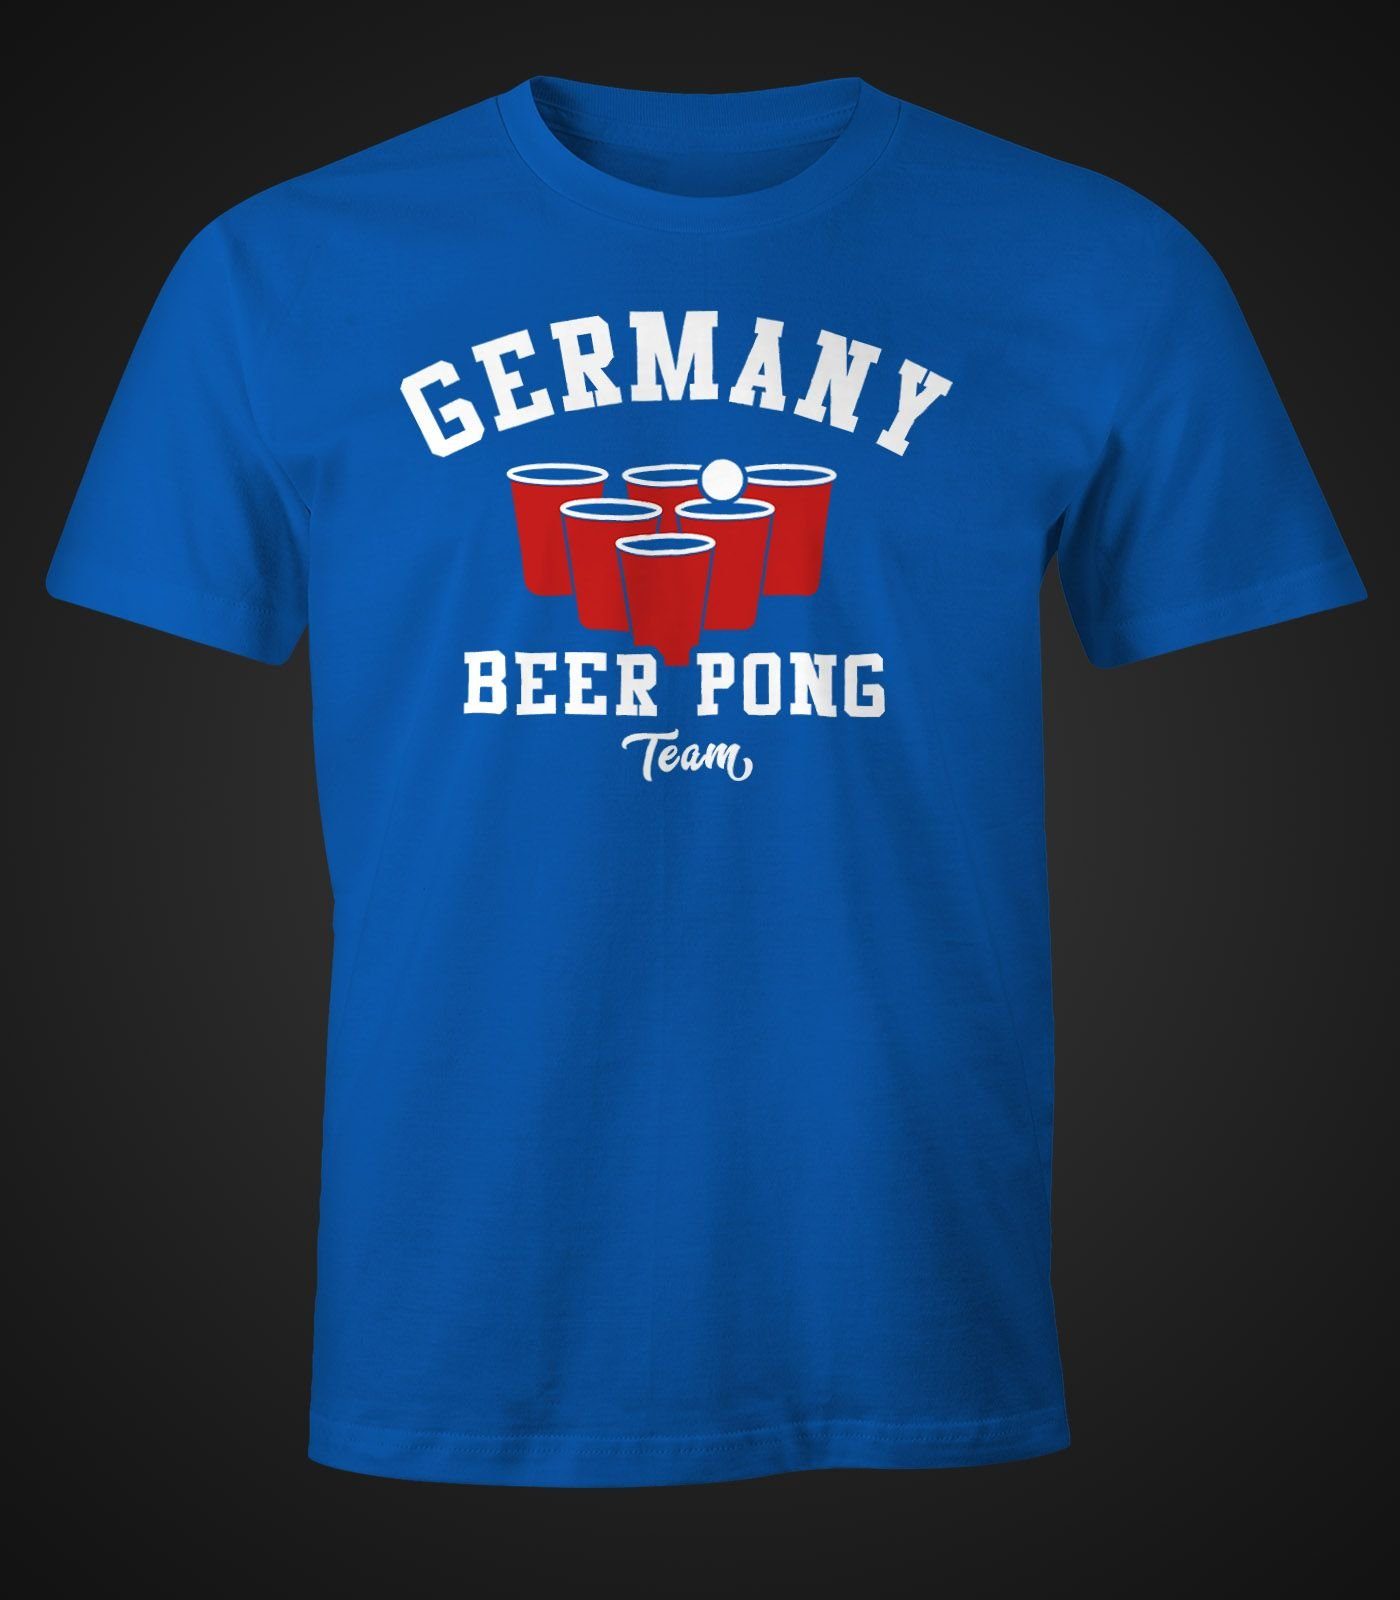 MoonWorks Print-Shirt blau Moonworks® Germany Bier Team Herren Fun-Shirt Print mit Pong Beer T-Shirt